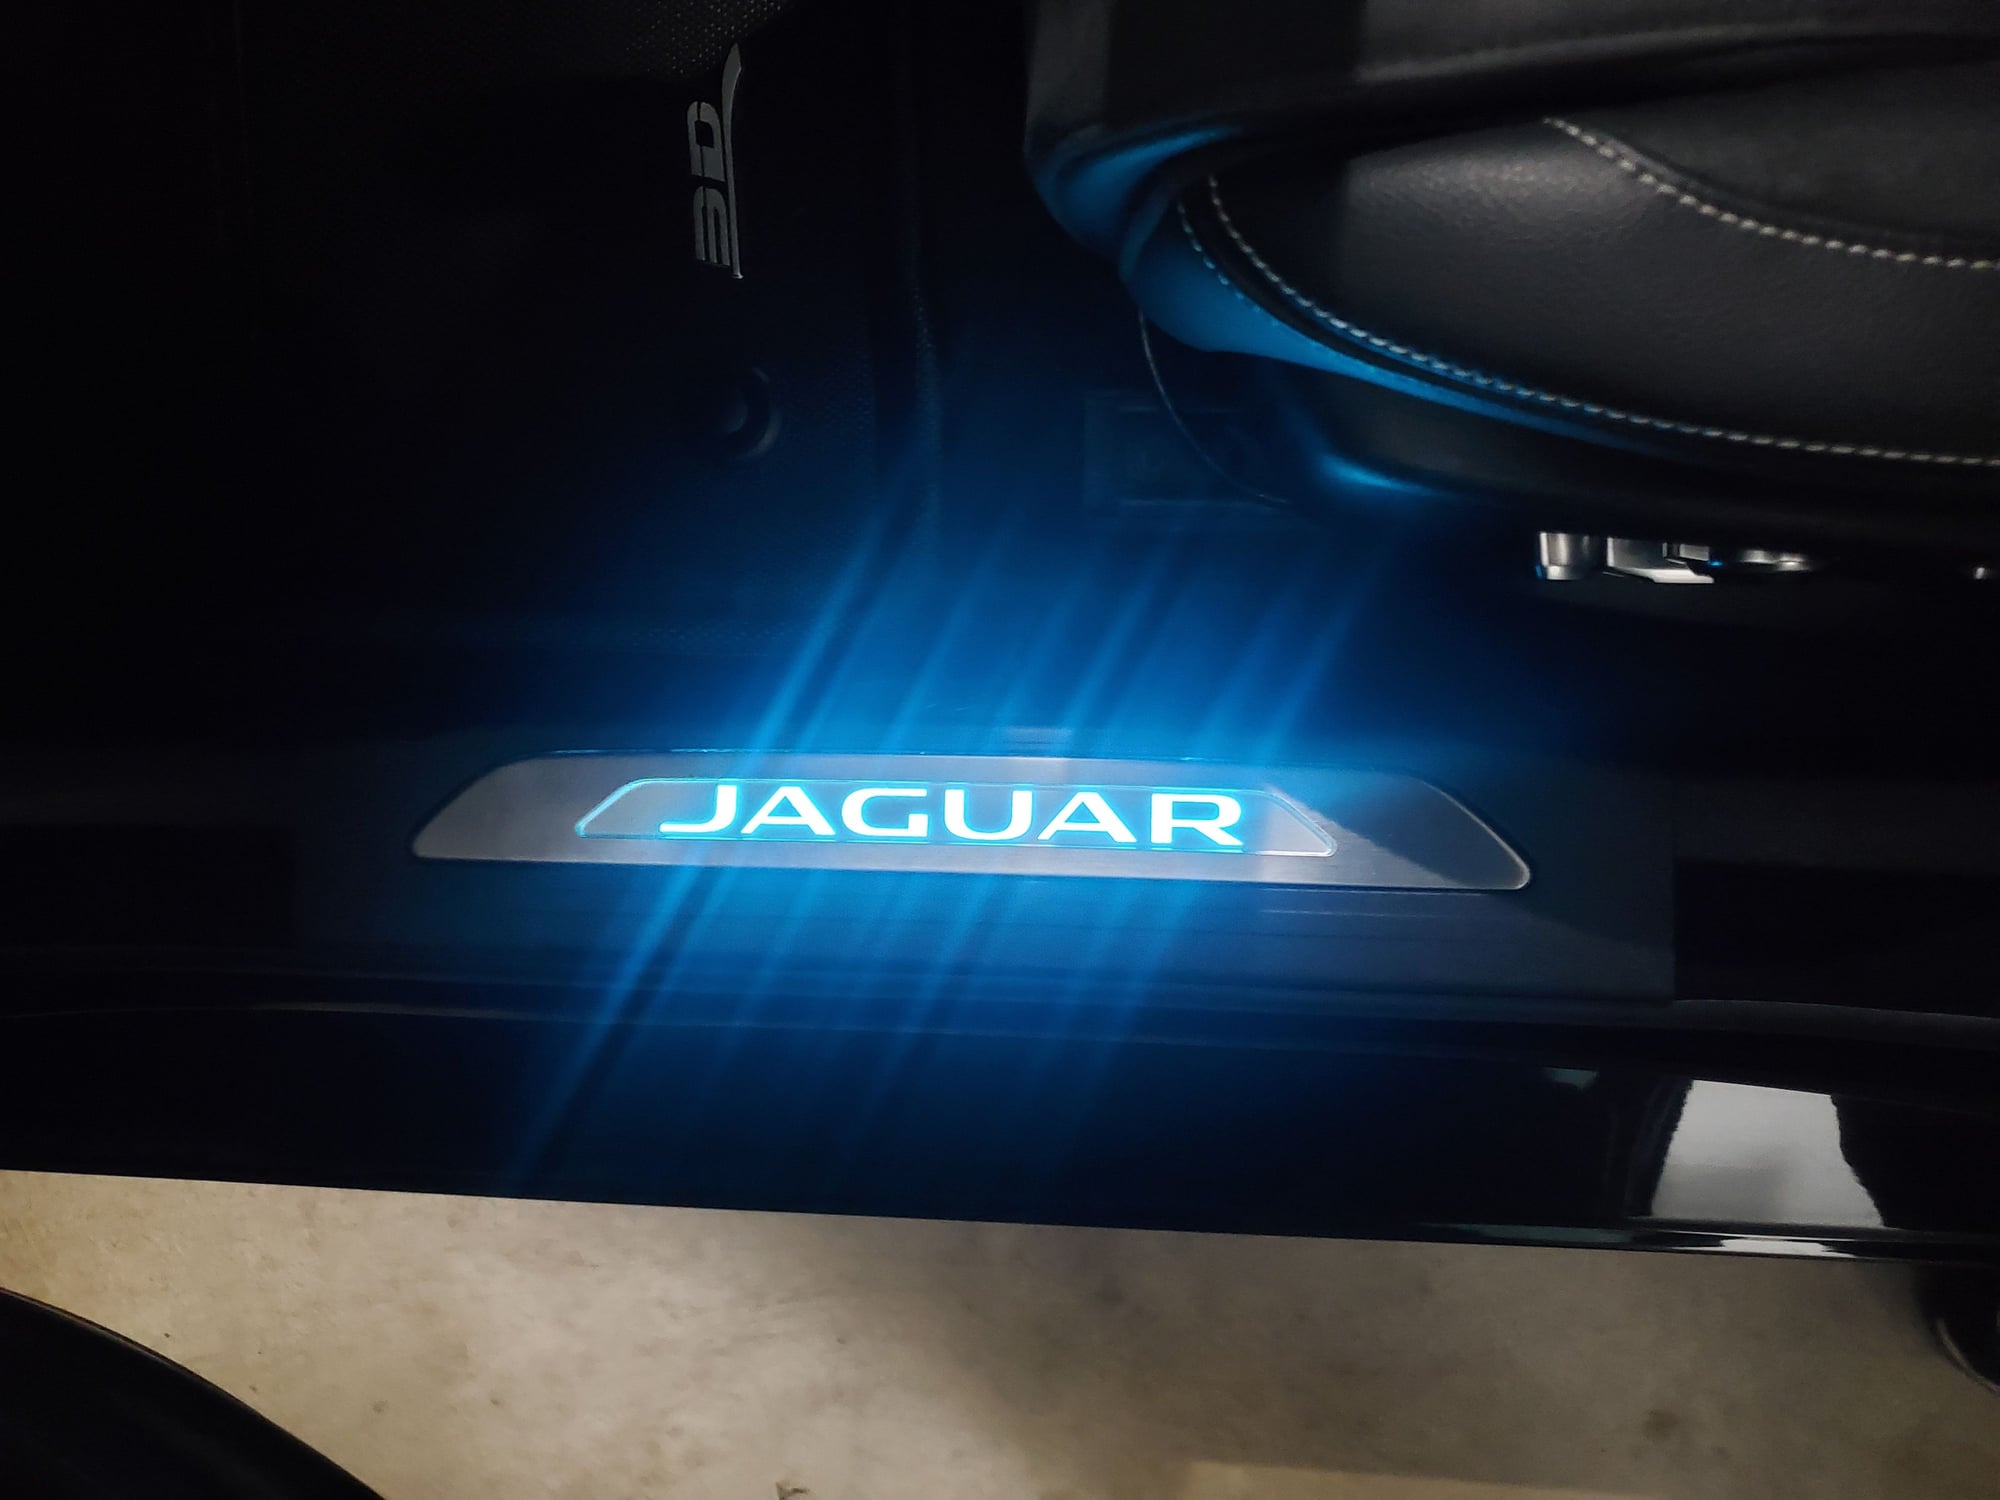 2019 Jaguar XE - 2019 Jaguar XE S AWD- 450BHP VAP Tuned! - Used - VIN SAJAM4FV5KCP44604 - 38,200 Miles - 6 cyl - AWD - Automatic - Sedan - Black - Pottstown, PA 19464, United States